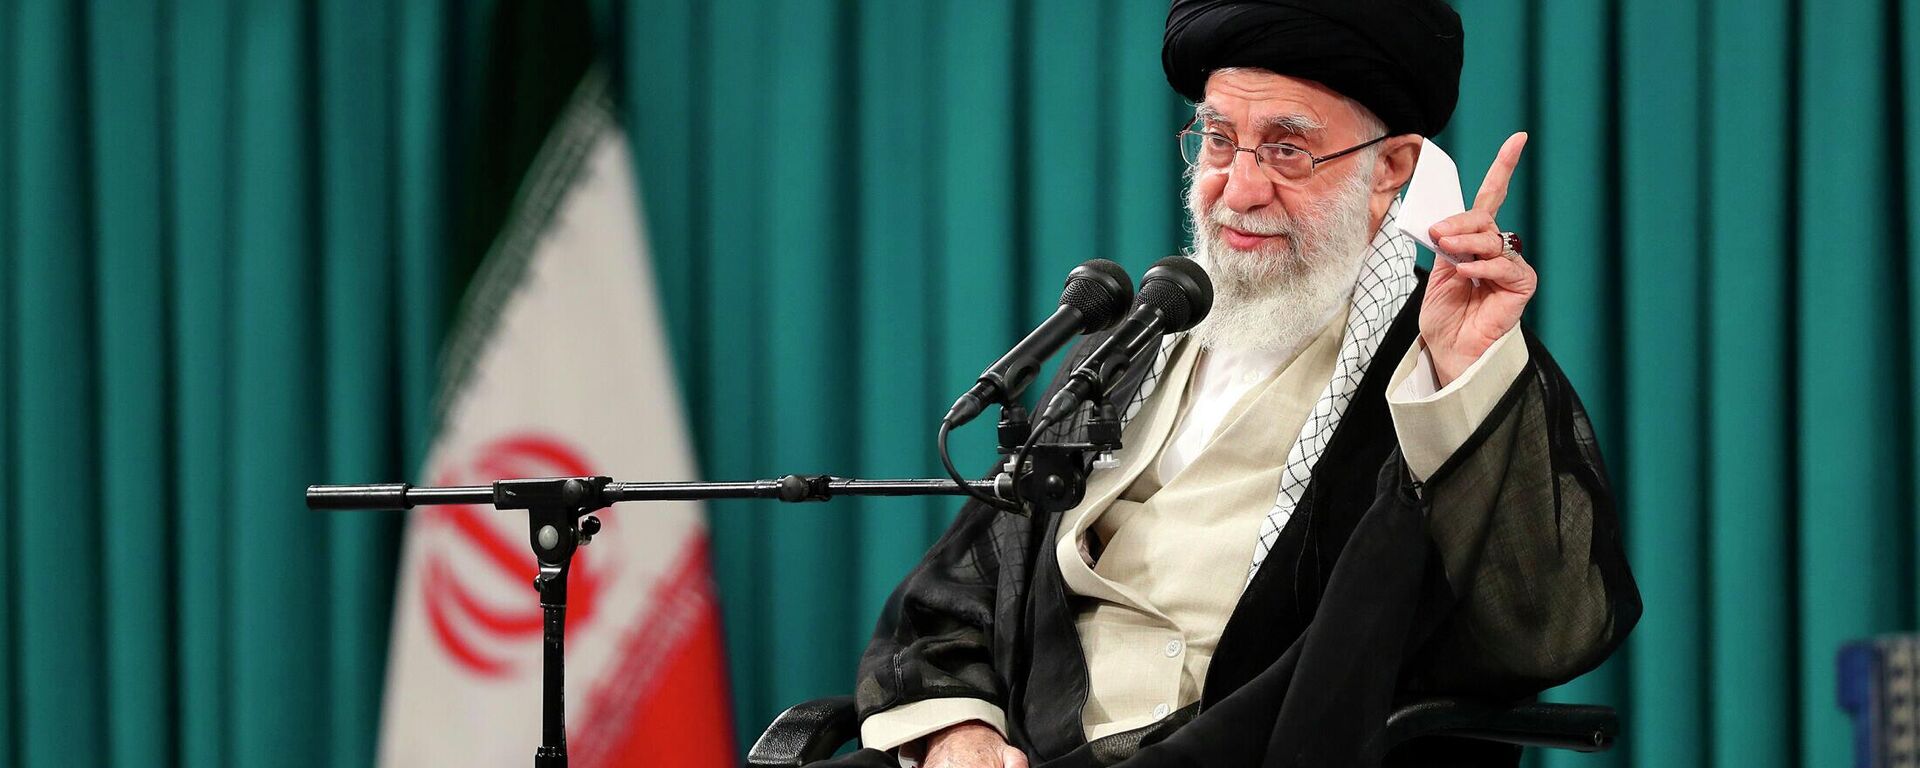 O líder supremo do Irã, aiatolá Ali Khamenei, fala em reunião com grupo de estudantes, em Teerã, no Irã, em 19 de outubro de 2022 (foto divulgada pelo site oficial do escritório do líder supremo iraniano) - Sputnik Brasil, 1920, 11.06.2023